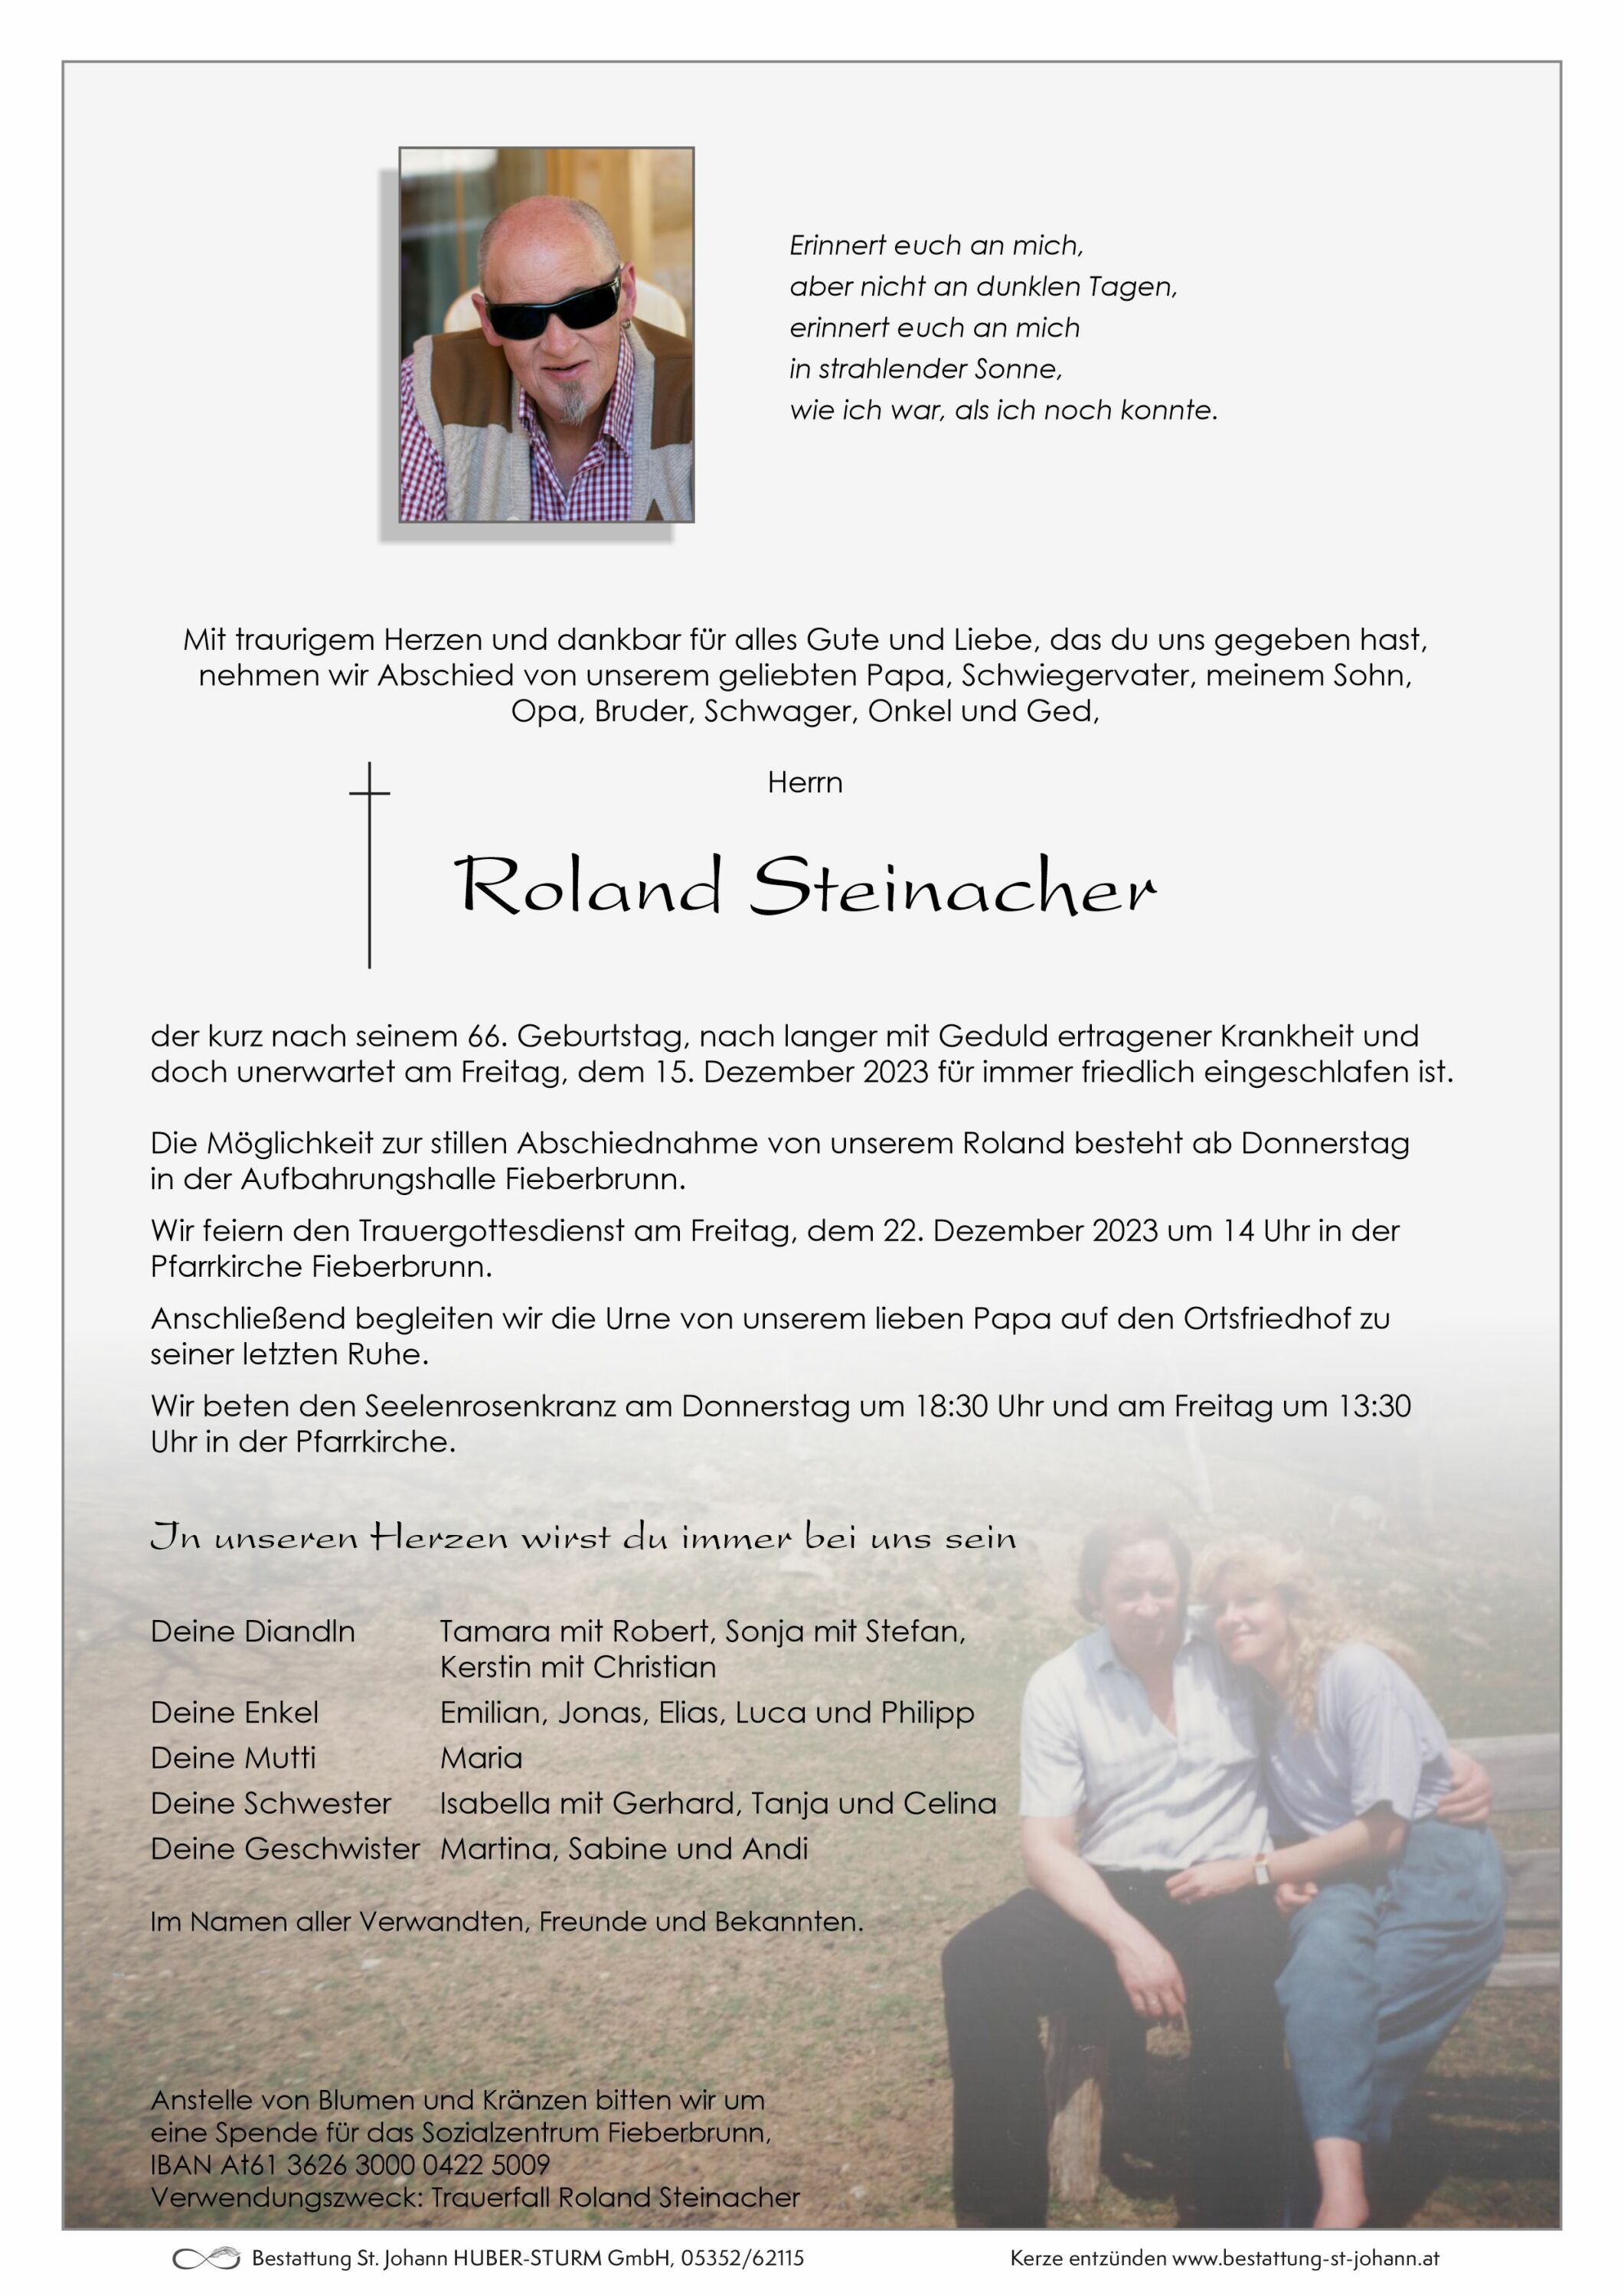 Roland Steinacher